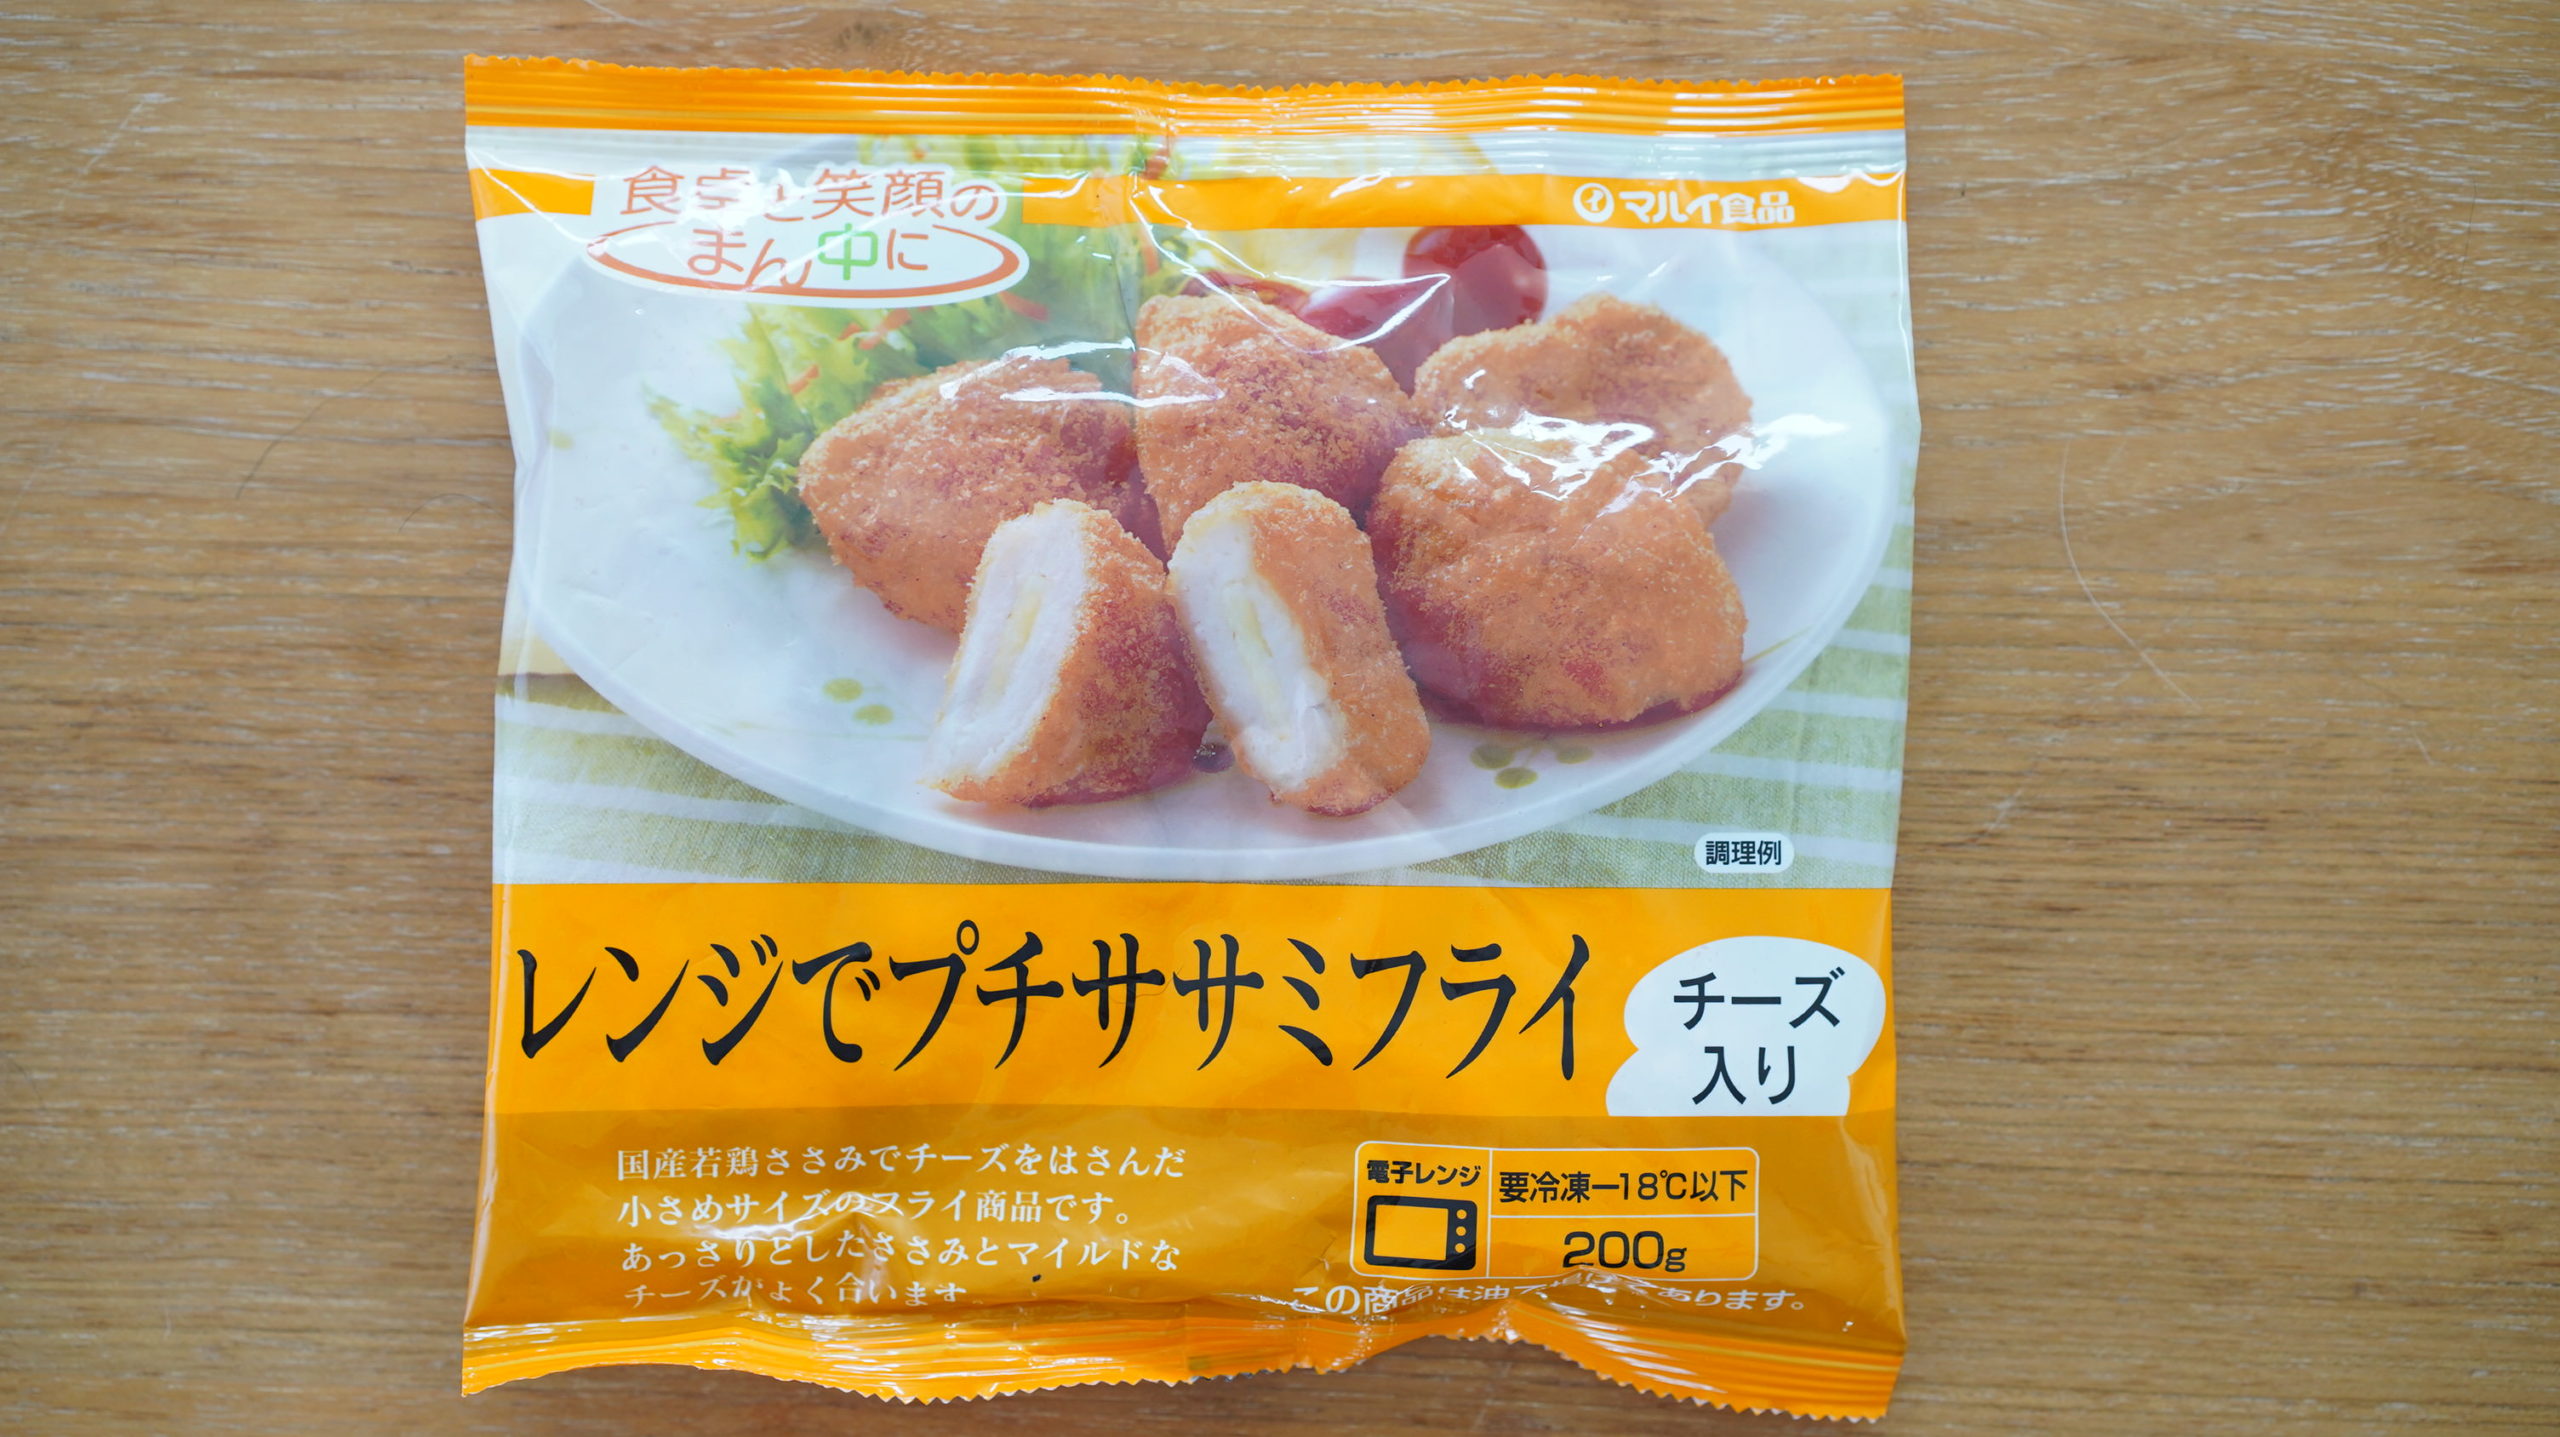 生協coop宅配の冷凍食品・ニチレイ「レンジでプチササミフライ」のパッケージ写真